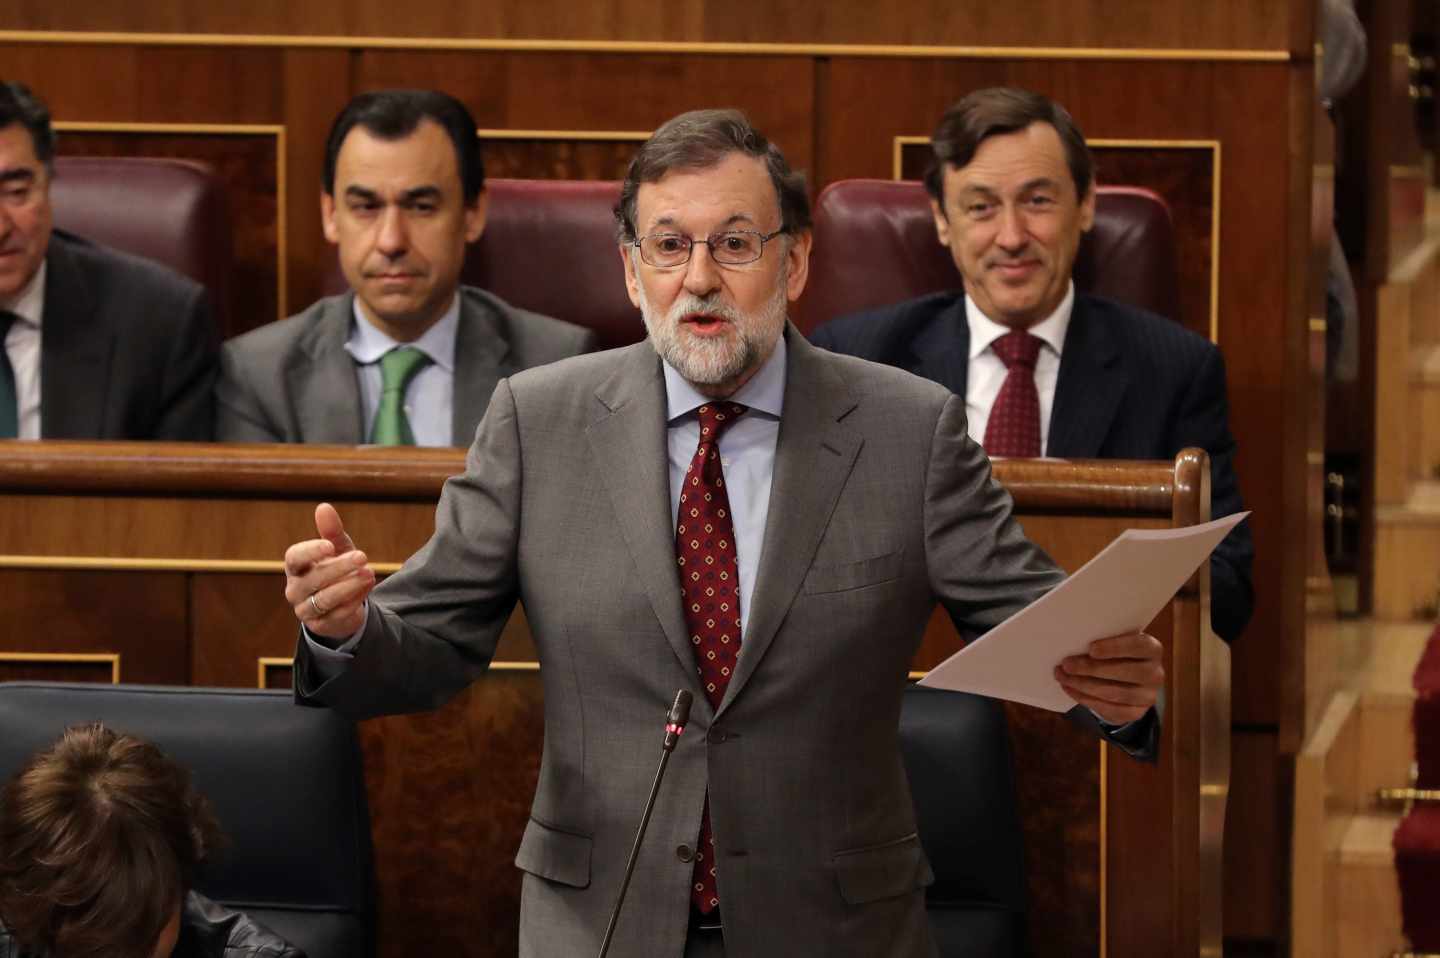 El presidente del Gobierno, Mariano Rajoy, interviene en la sesión de control del Congreso.